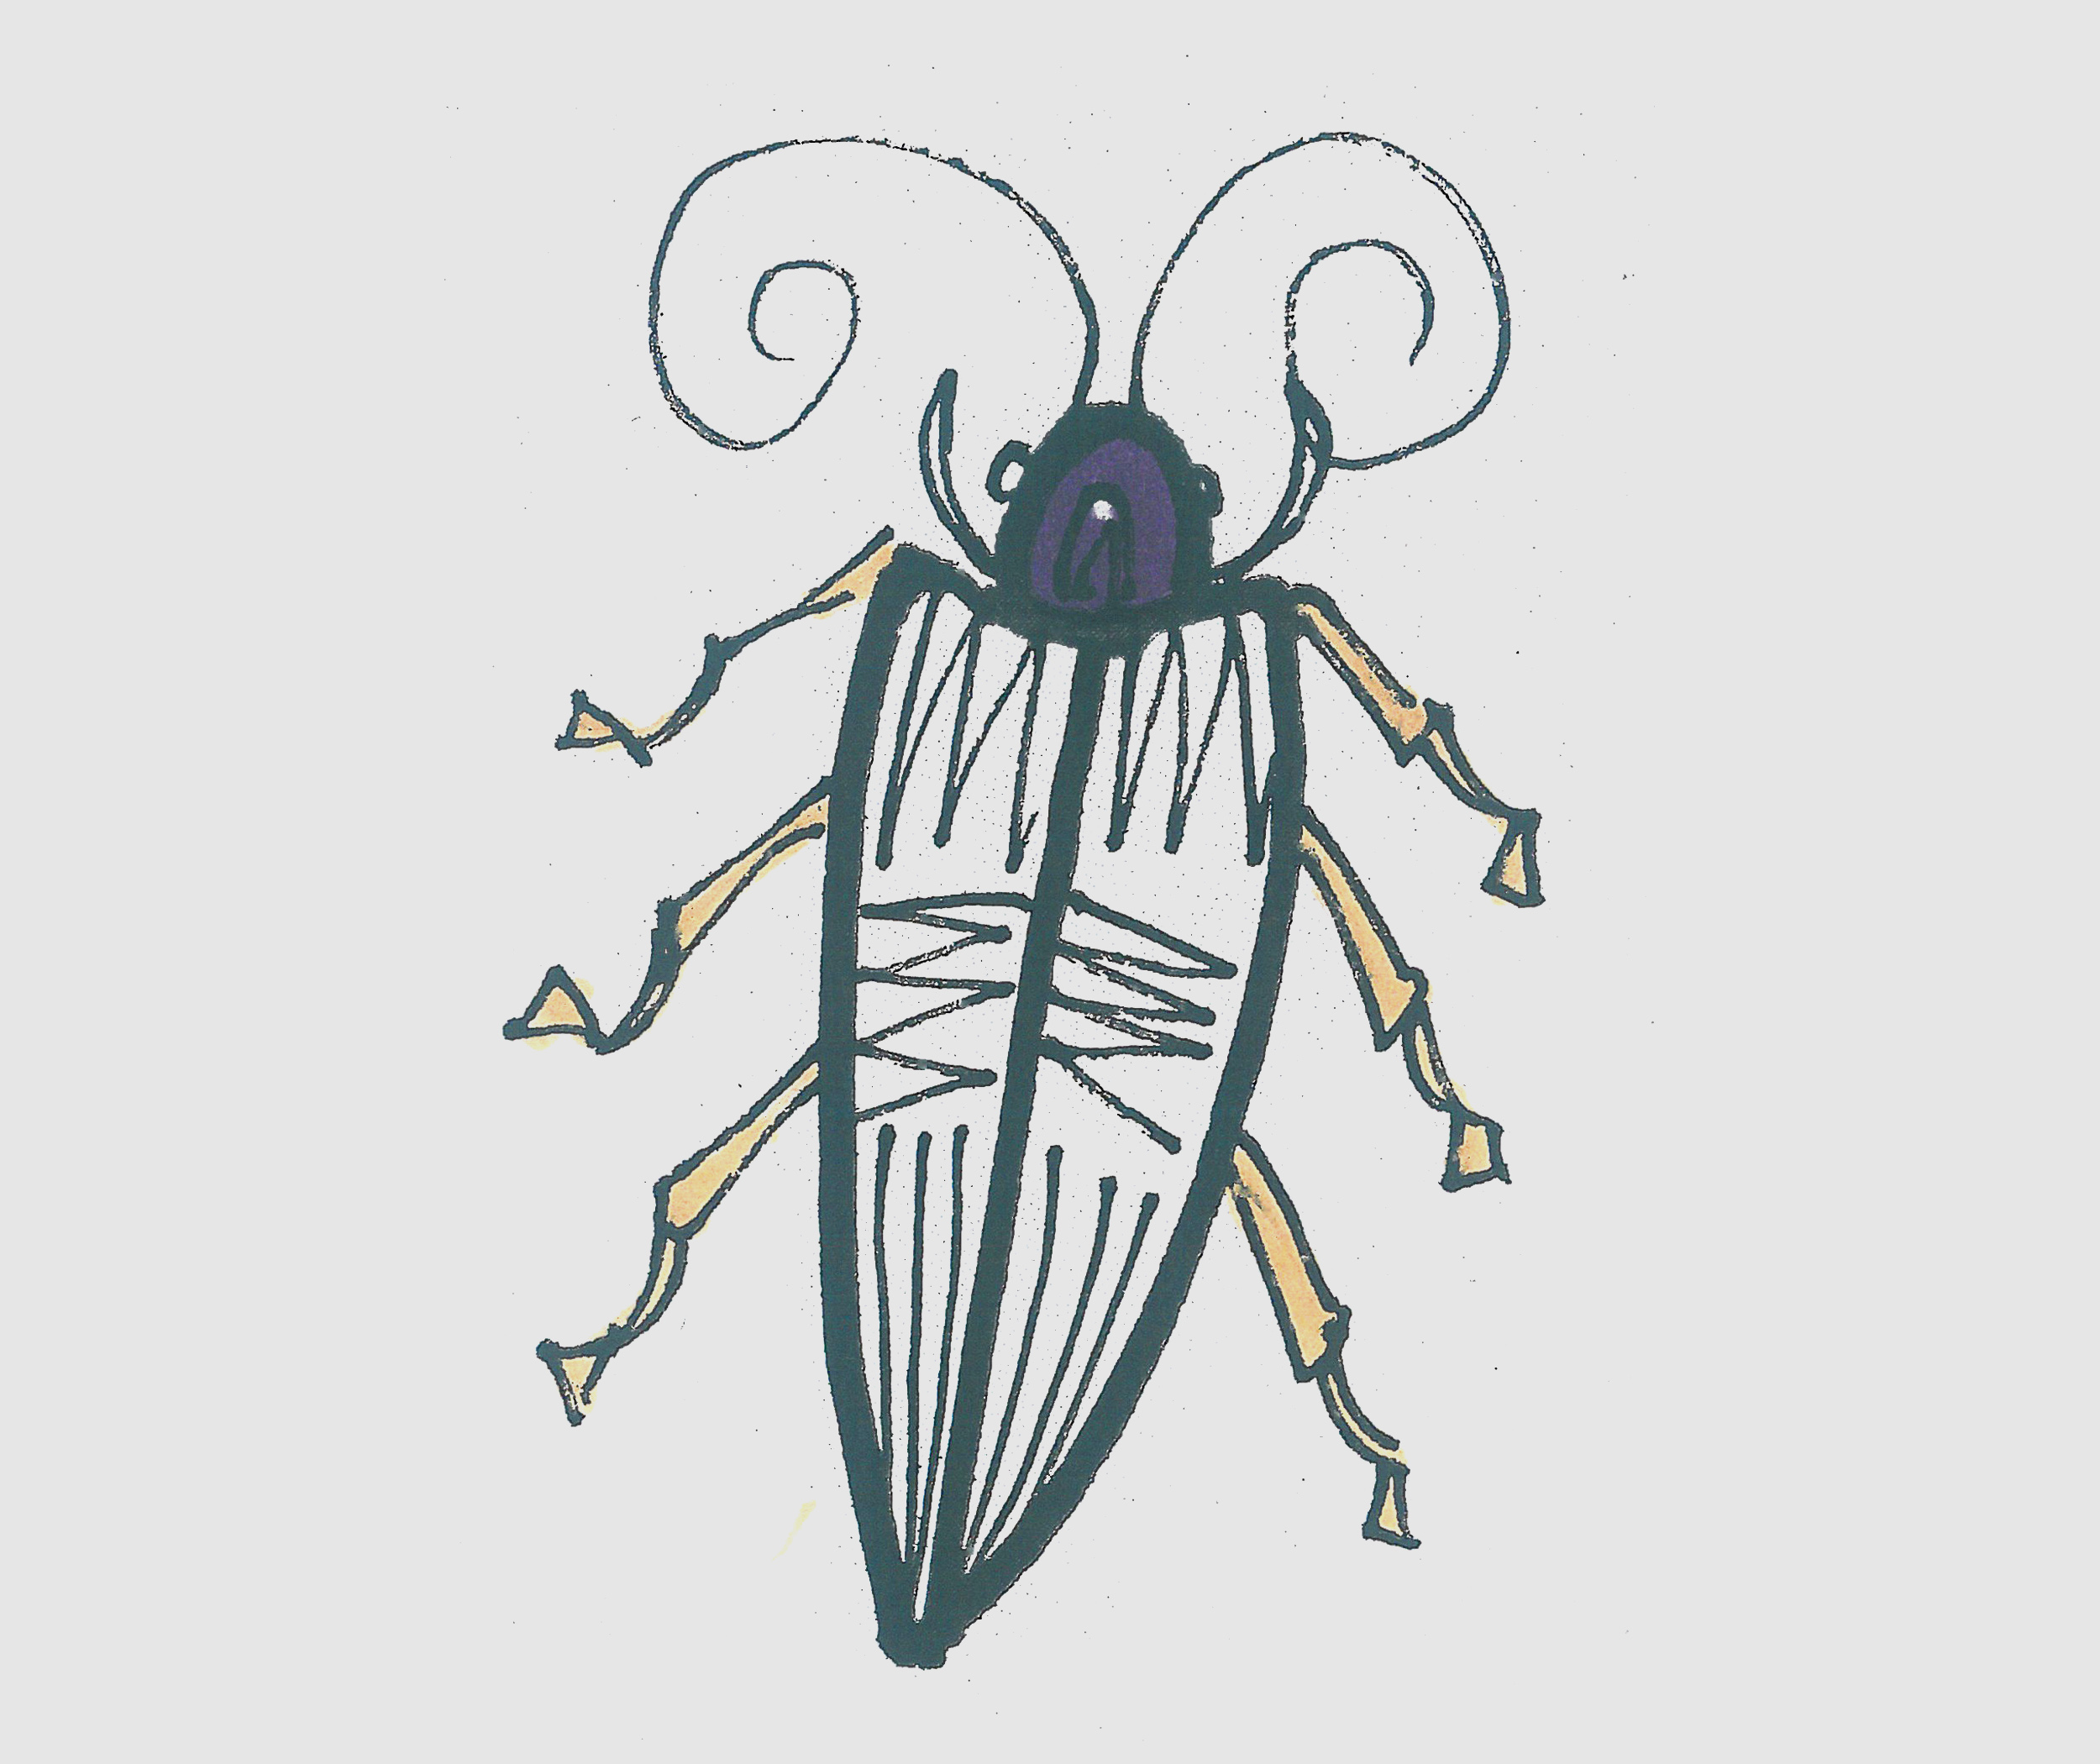 儿童简笔画色彩甲虫怎么画最简单 可爱甲虫的画法